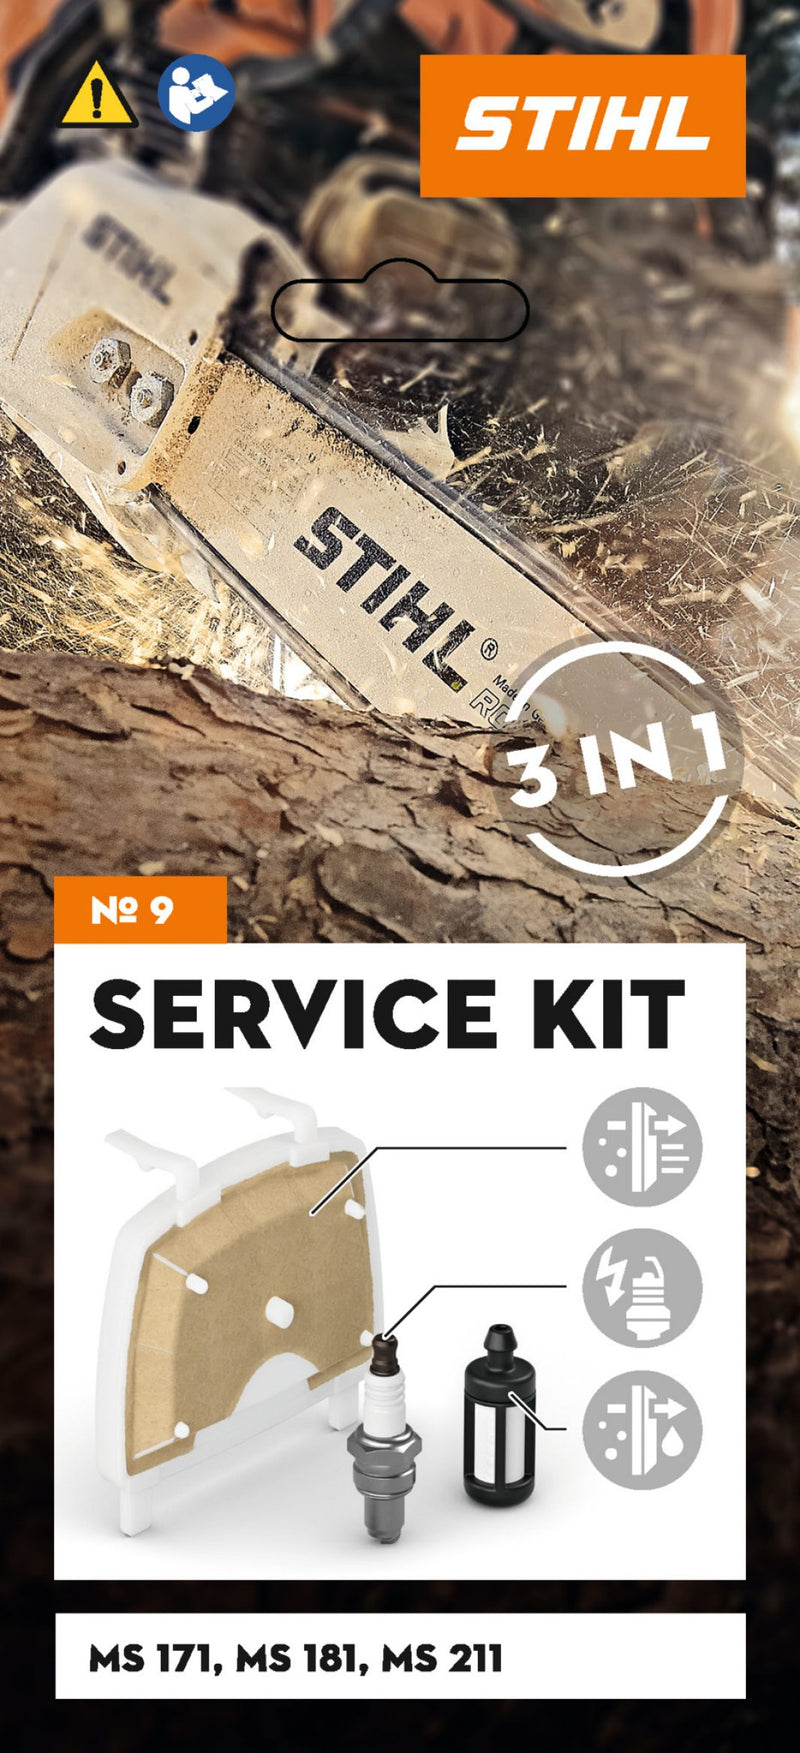 Service Kit n°9 pour tronçonneuse MS 181 et MS 211 STIHL